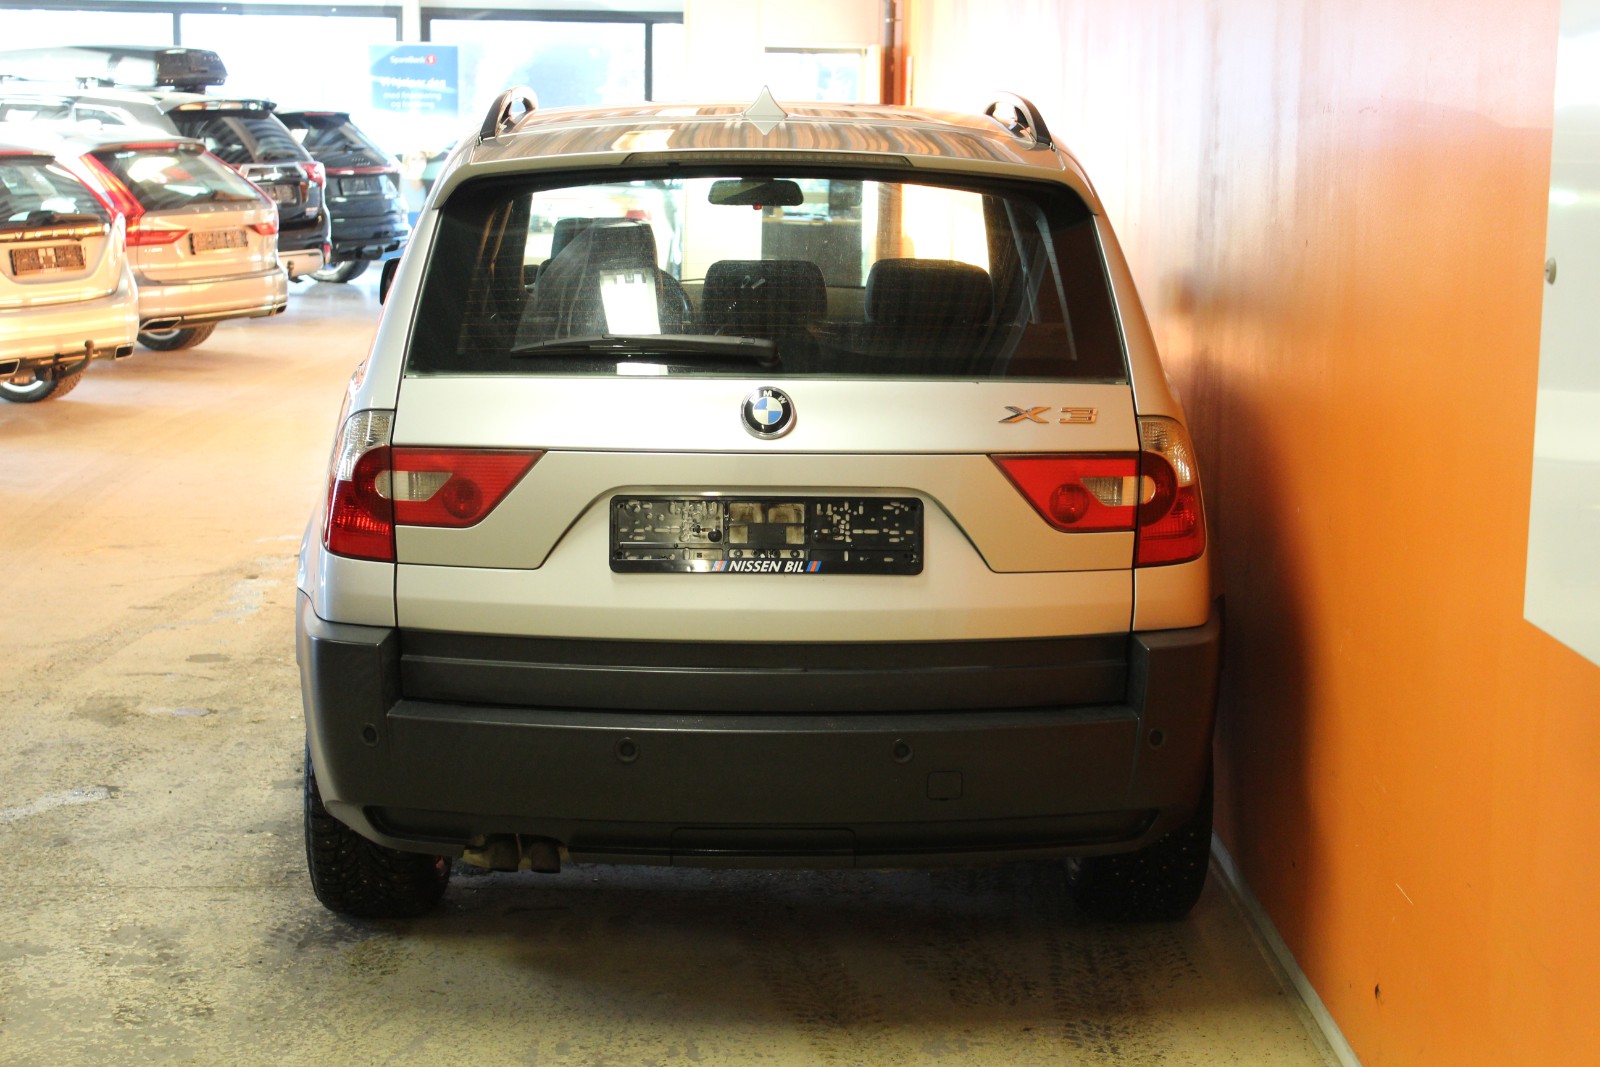 Bilde 5 av BMW X3 2004